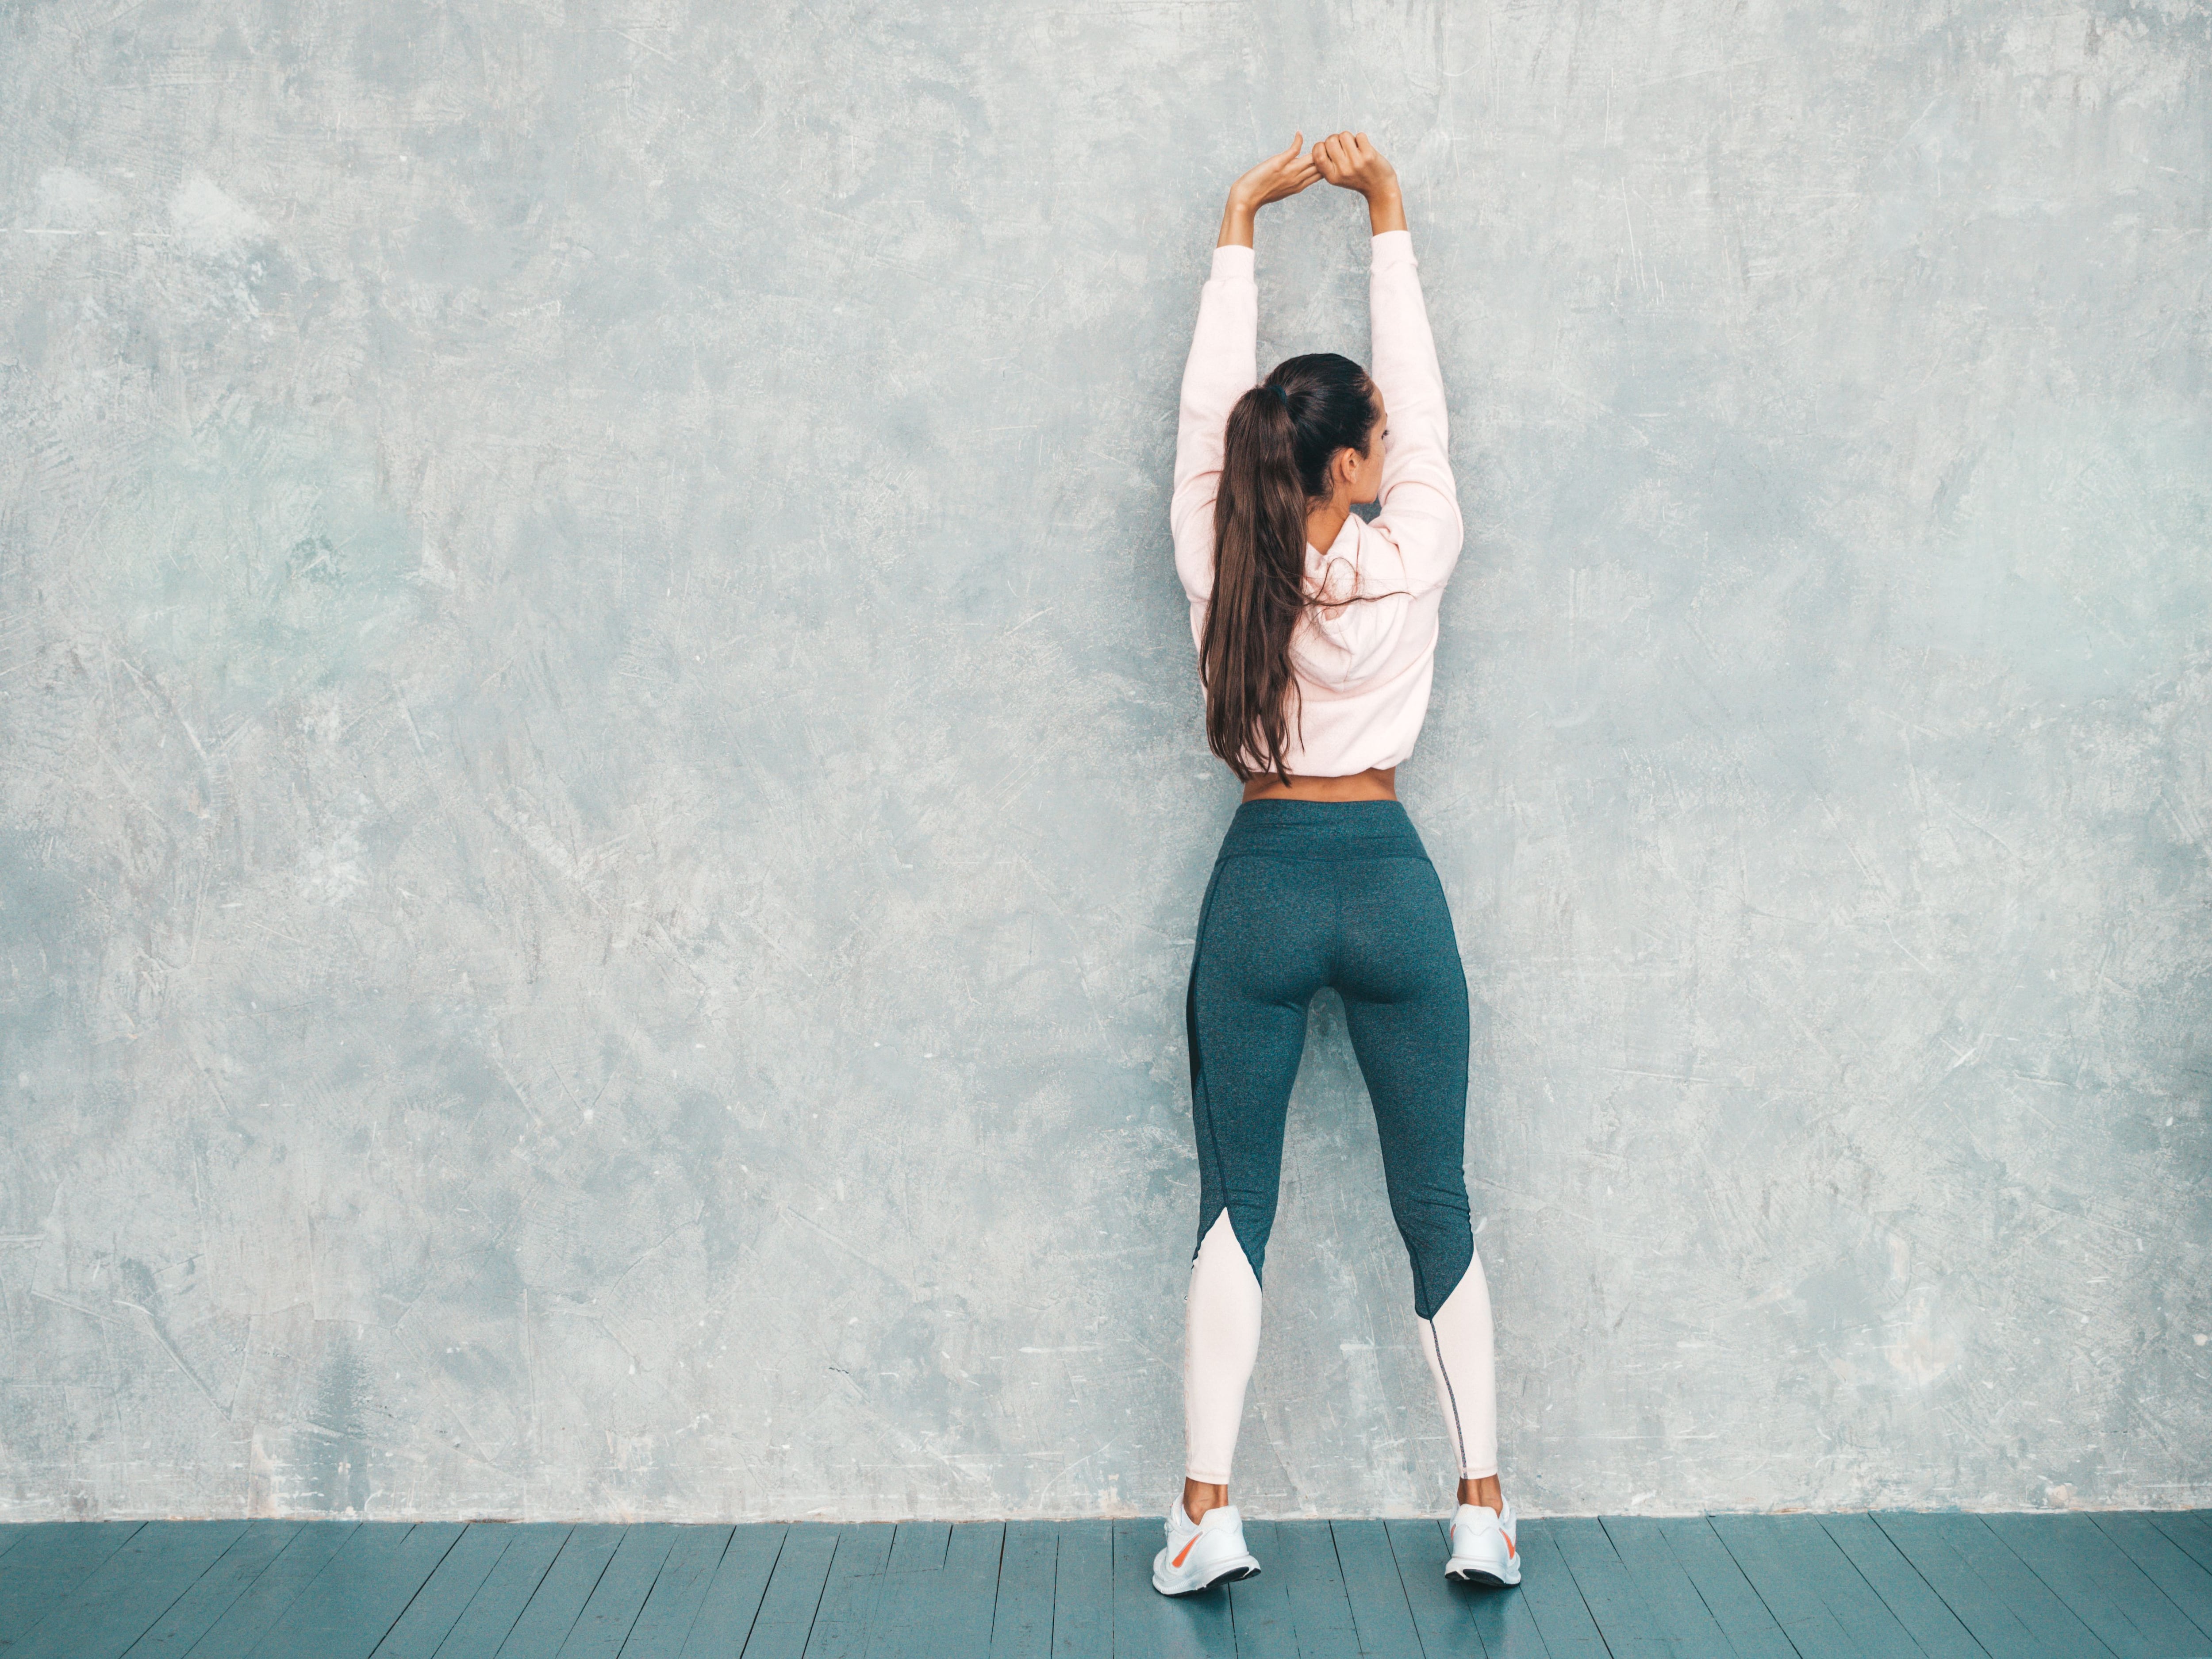 Si inicias en pilates, la pared será un gran apoyo para que te acostumbres a algunos ejercicios